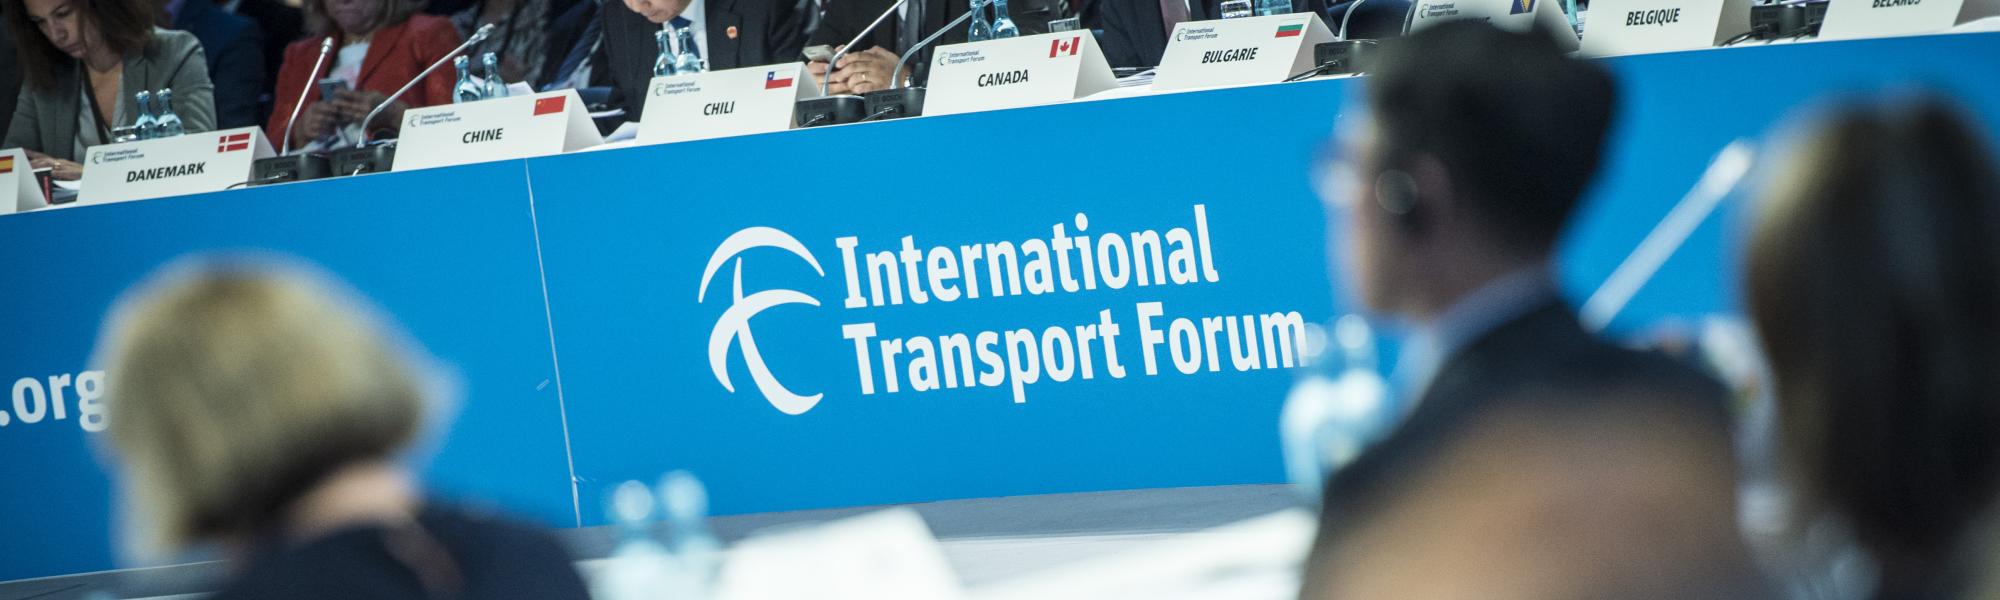 ITF International Transport Forum 2018